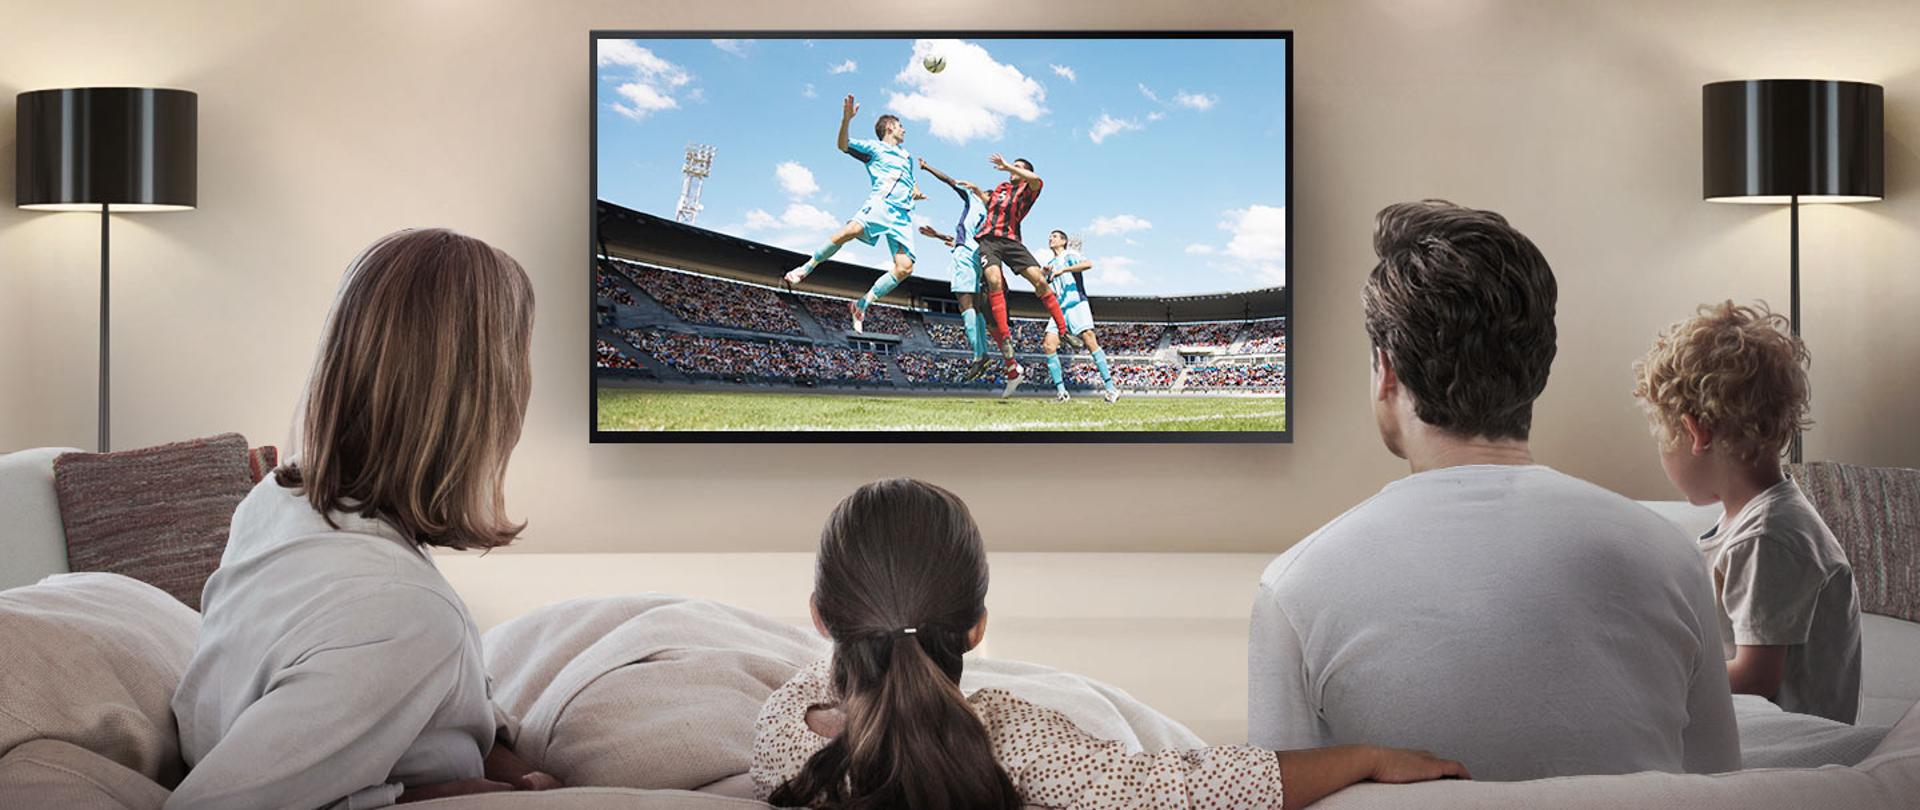 Zdjęcie ilustracyjne w poziomie. Na pierwszym planie biała kanapa, na której siedzi rodzina. Na dalszym planie telewizor, na którym wyświetlany jest mecz piłki nożnej.